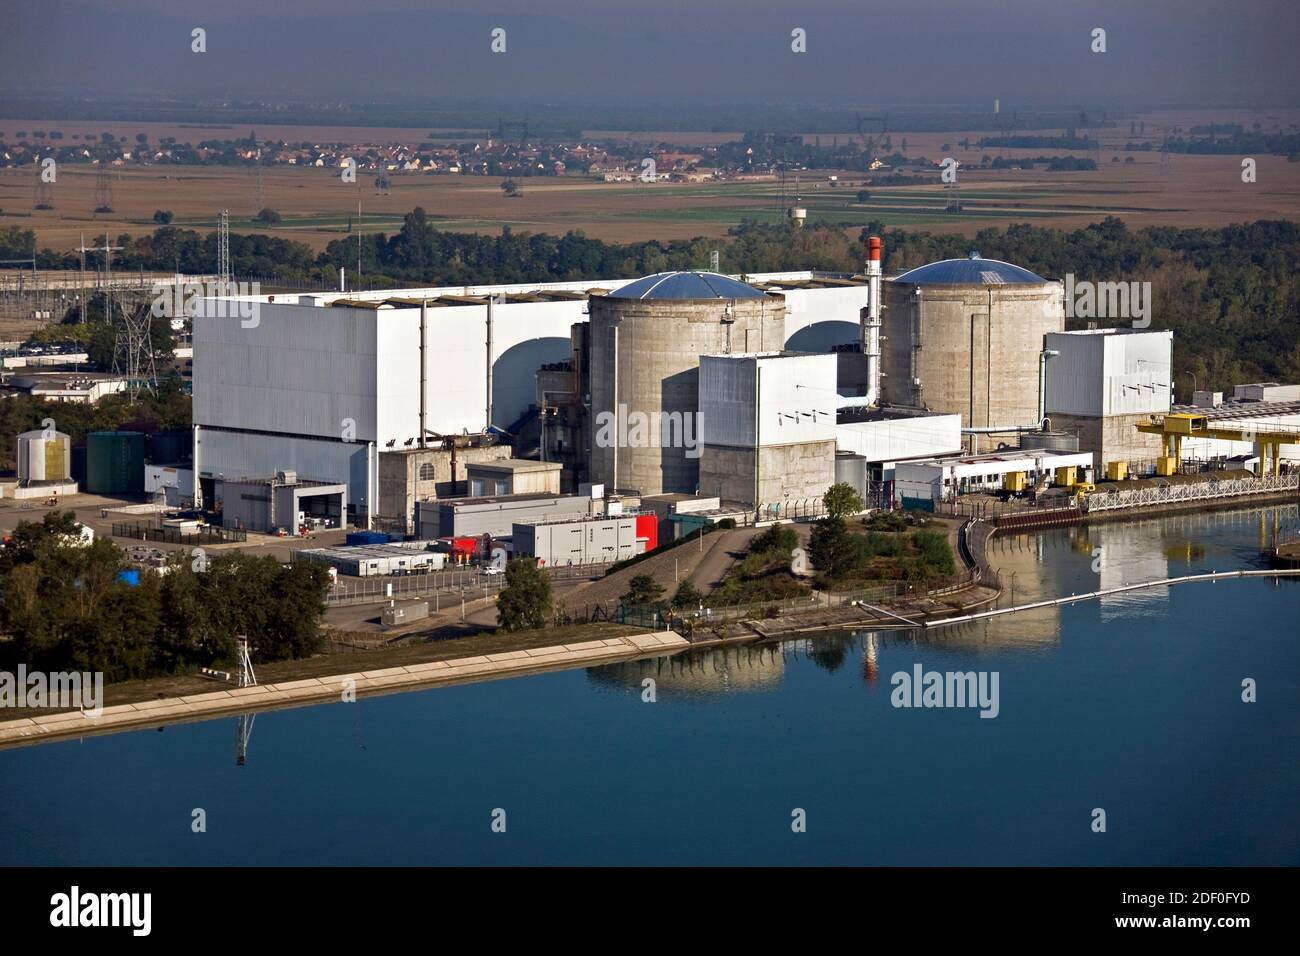 Le premier réacteur de la plus ancienne centrale nucléaire française de Fessenheim sera fermé le samedi 22 février 2020 ------- Dossier - vue de la centrale nucléaire CNPE de Fessenheim près du Grand Canal d'Alsace, est de la France . Photo de Didier Marc/EDF/ABACAPRESS.COM Banque D'Images